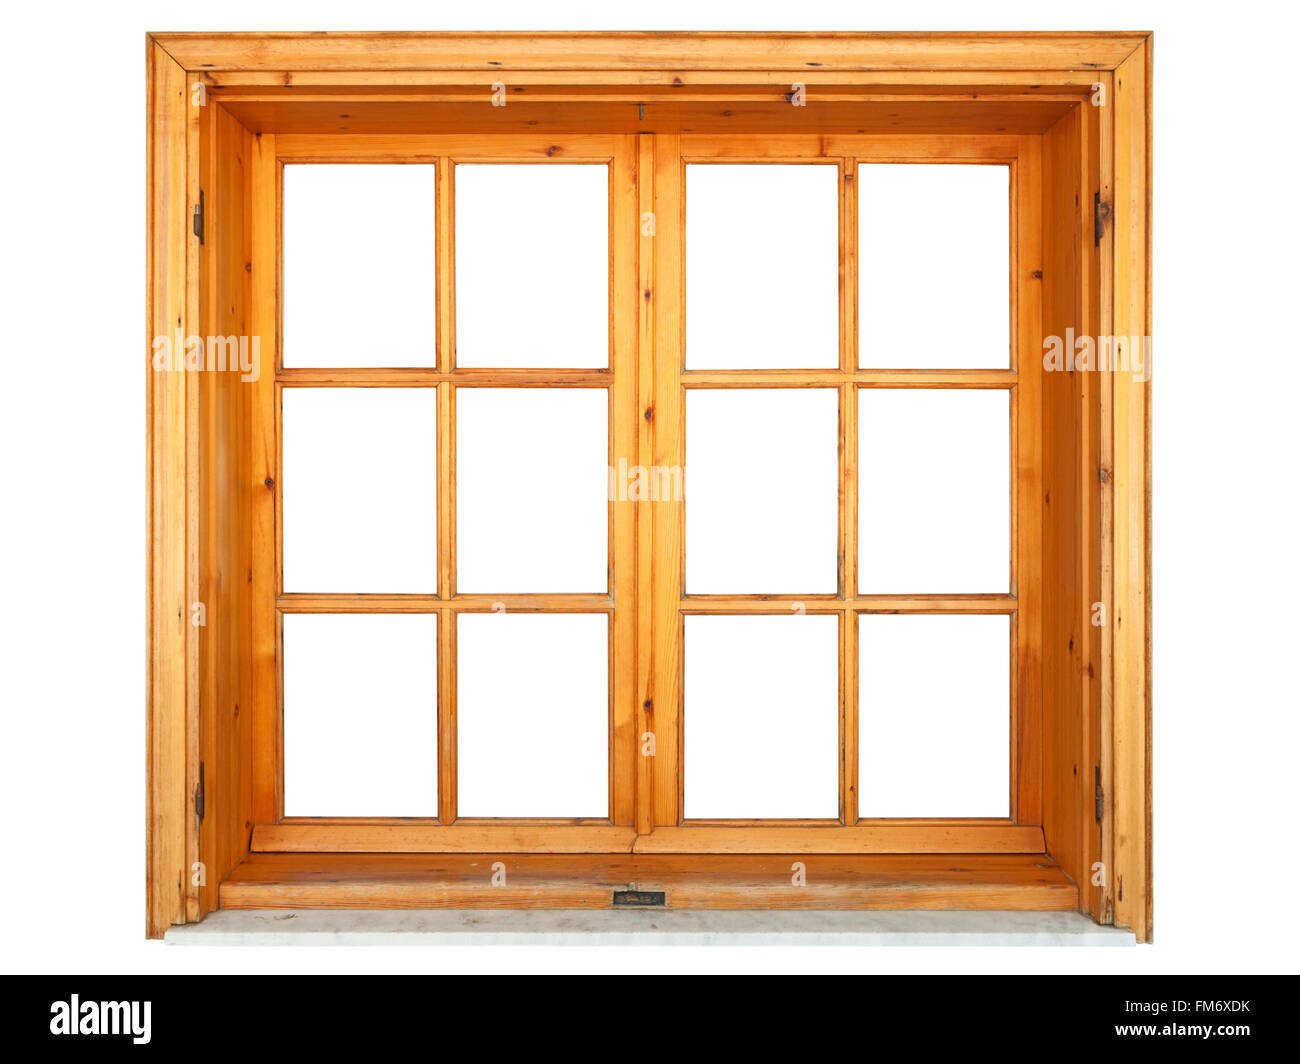 Fermeture de fenêtre en bois isolé sur fond blanc Banque D'Images